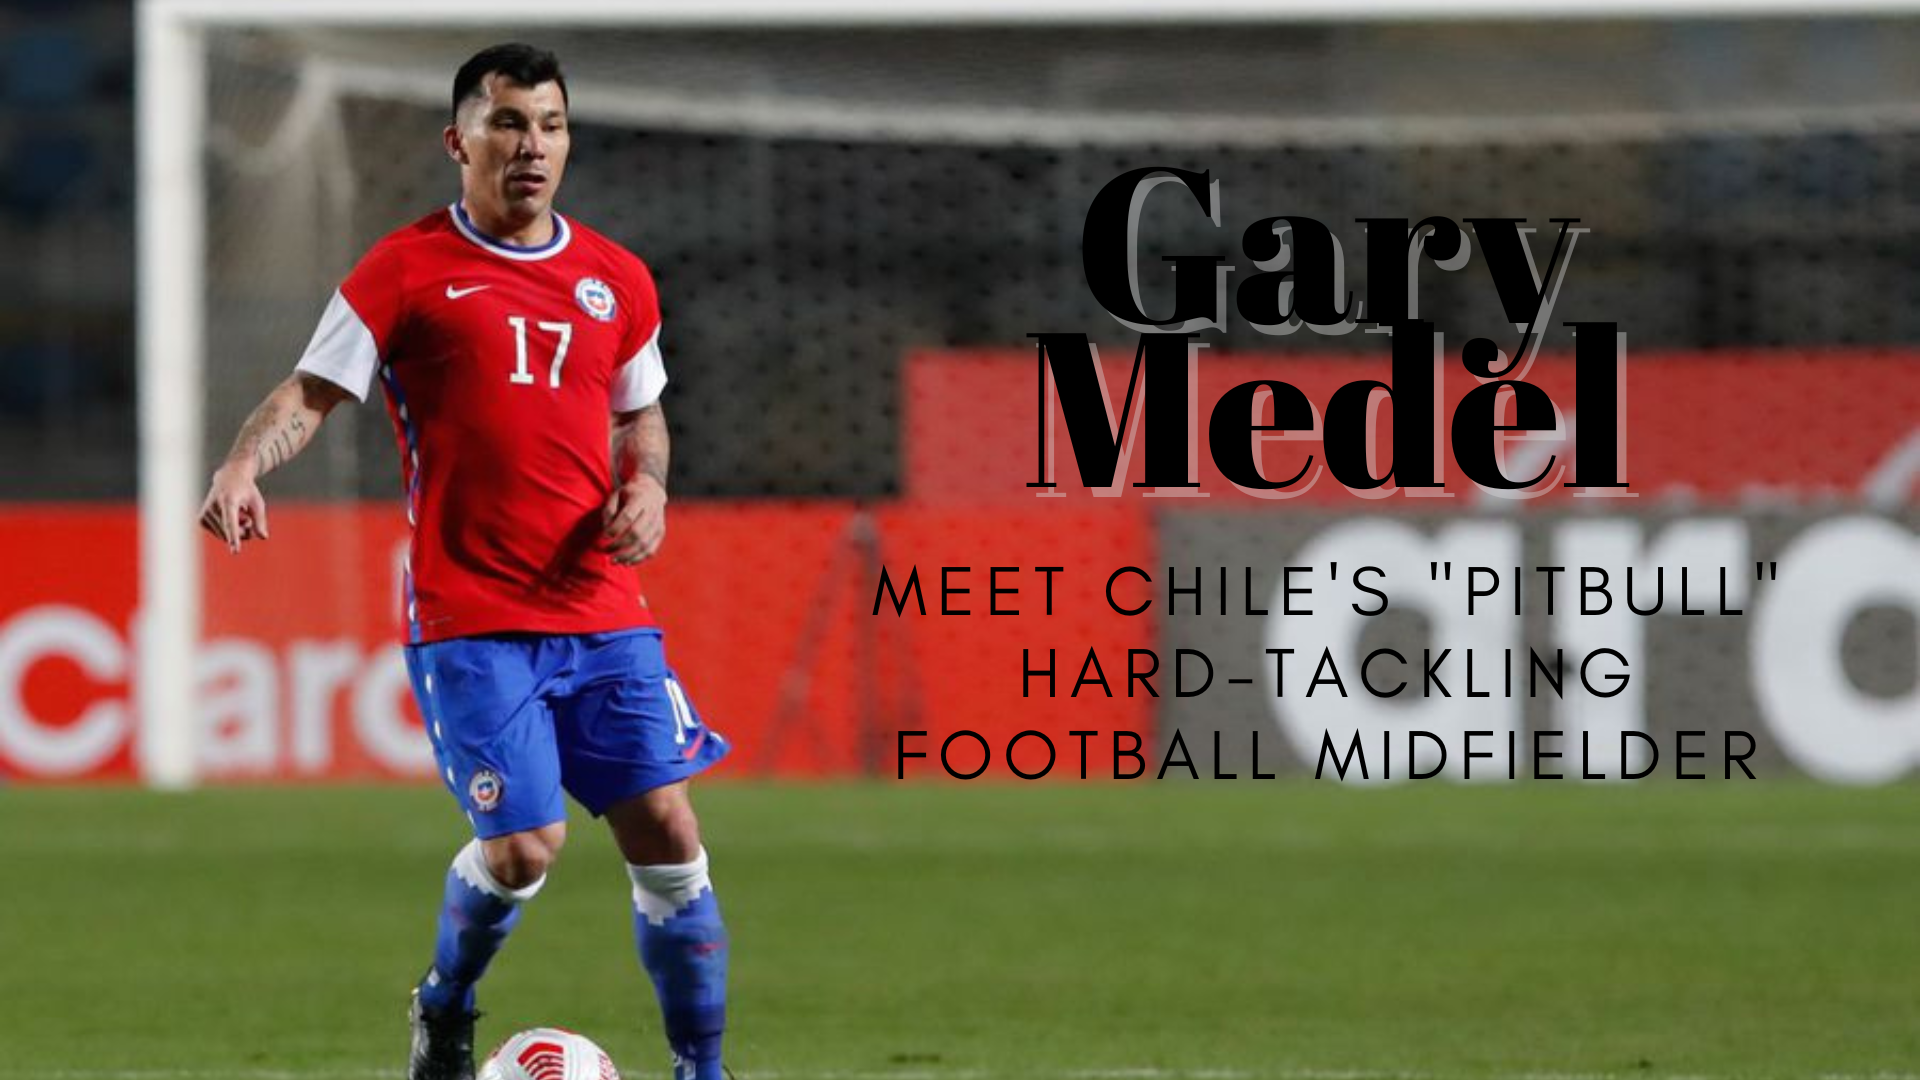 Gary Medel - Meet Chile's "Pitbull" Hard-Tackling Football Midfielder